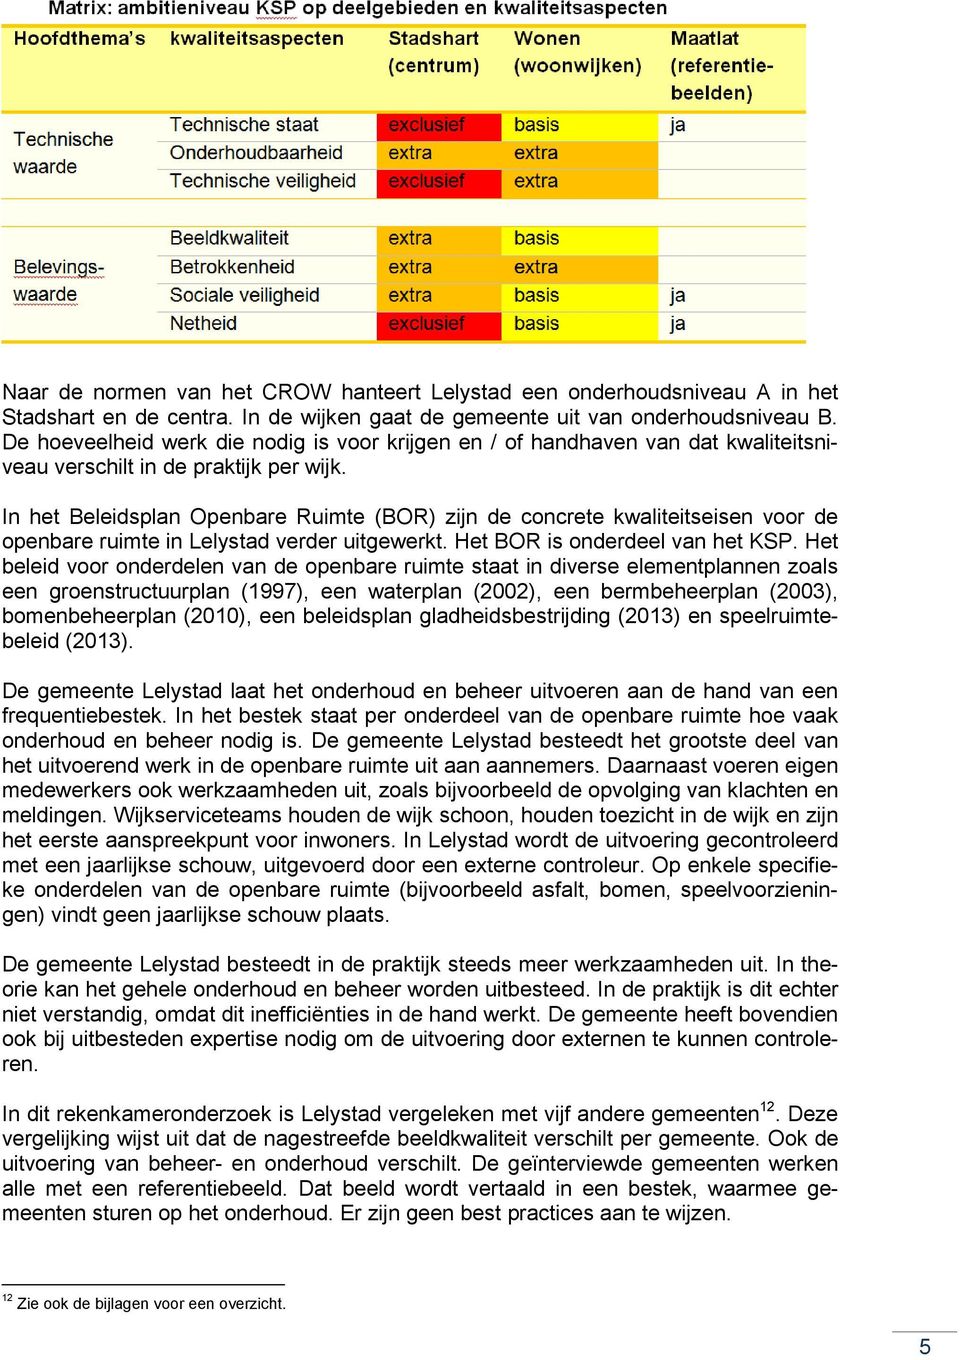 In het Beleidsplan Openbare Ruimte (BOR) zijn de concrete kwaliteitseisen voor de openbare ruimte in Lelystad verder uitgewerkt. Het BOR is onderdeel van het KSP.